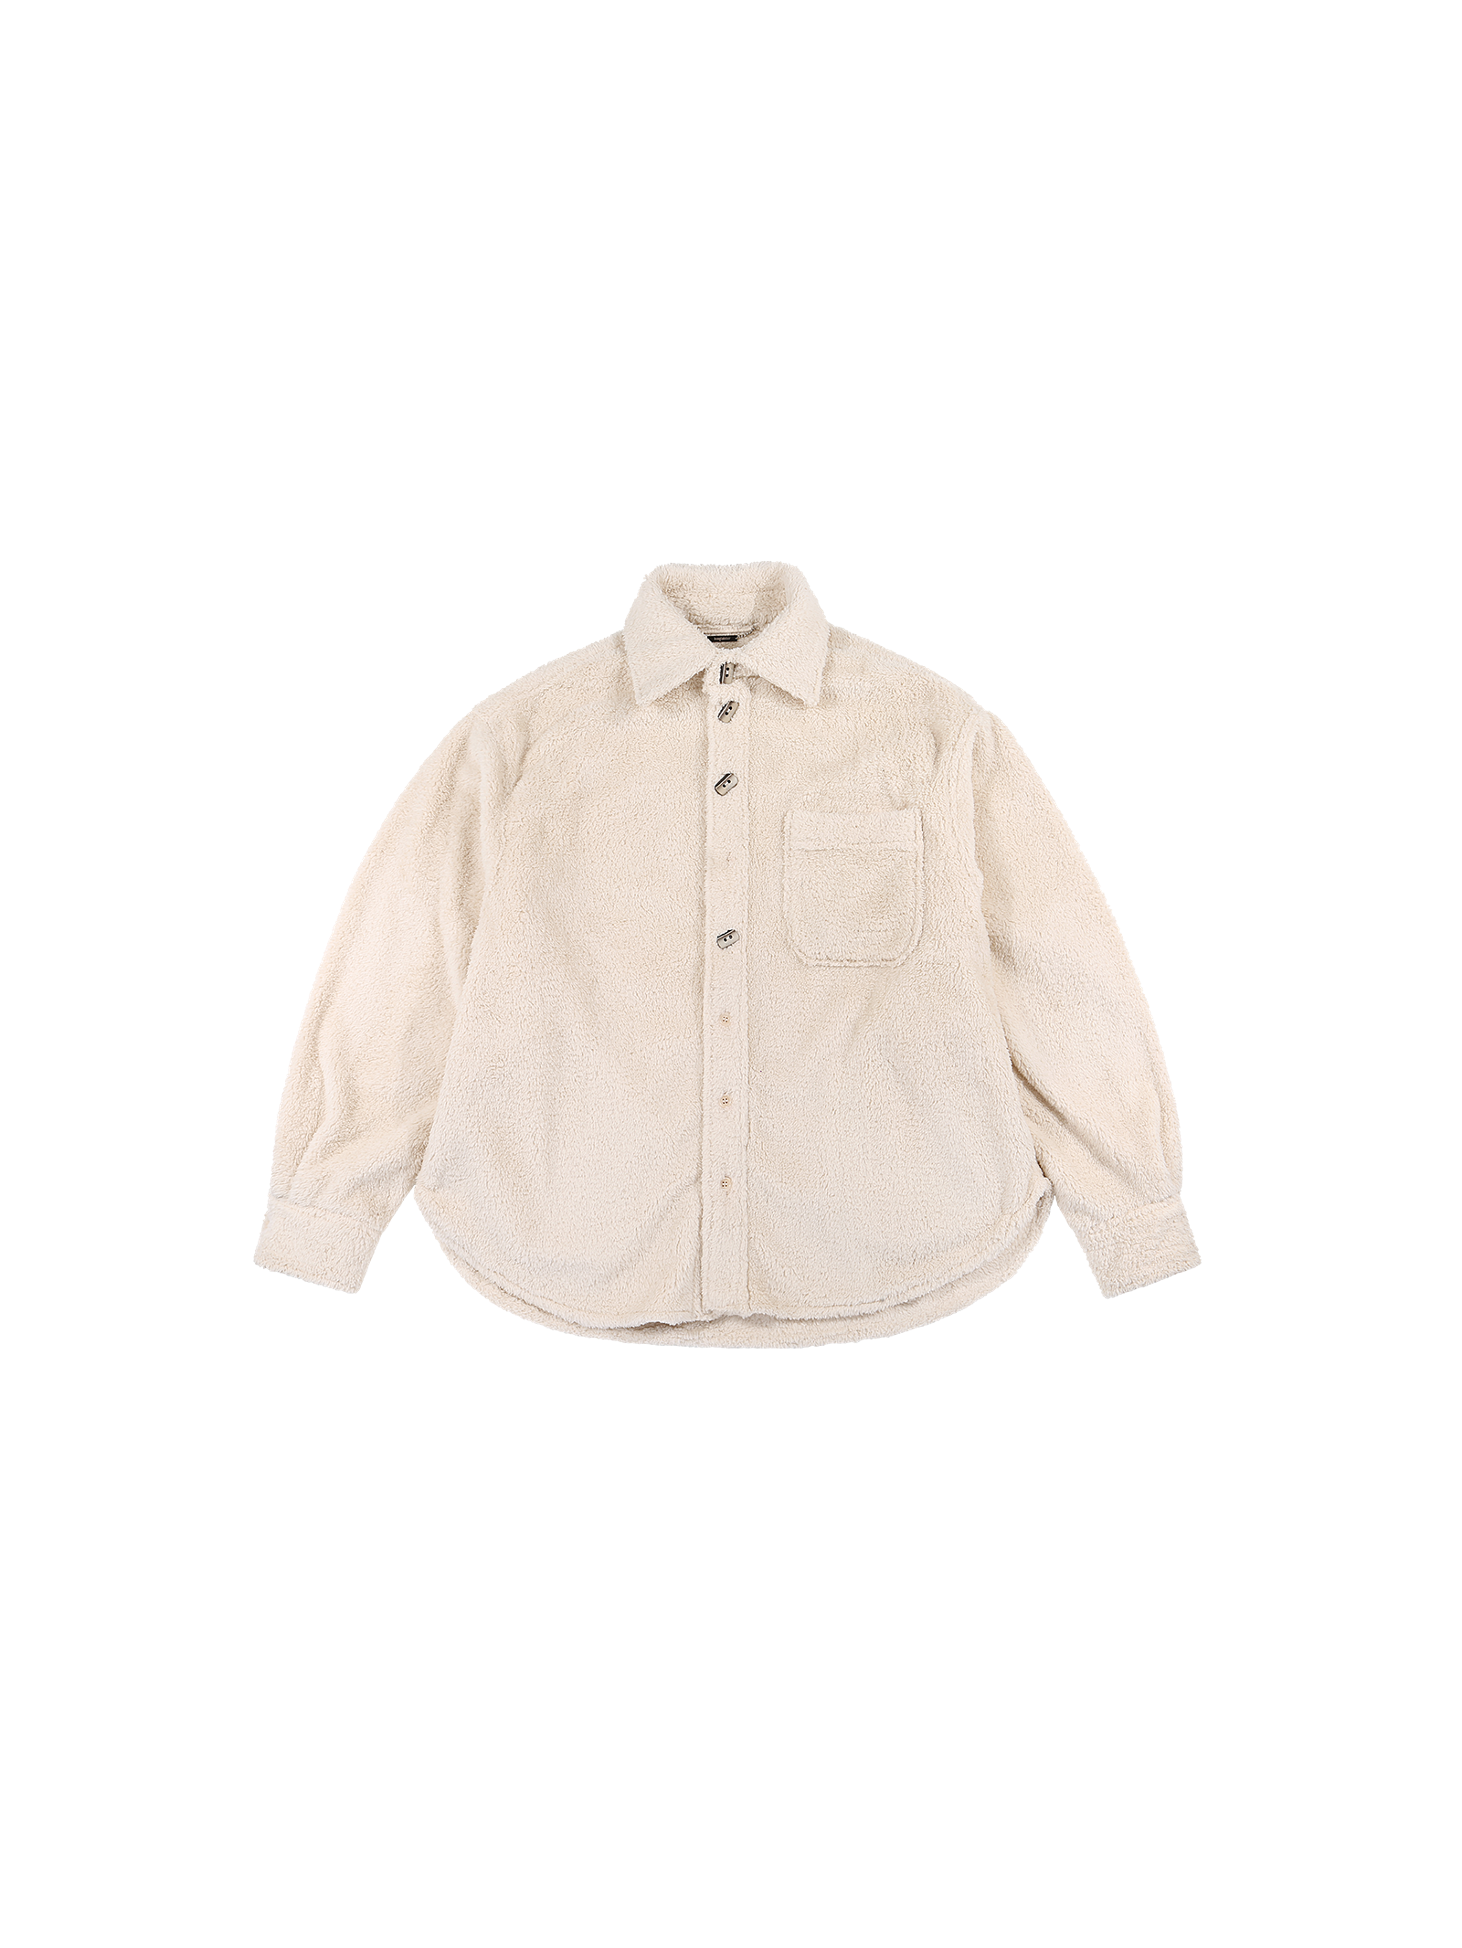 Oversized shearling shirt / Ivory